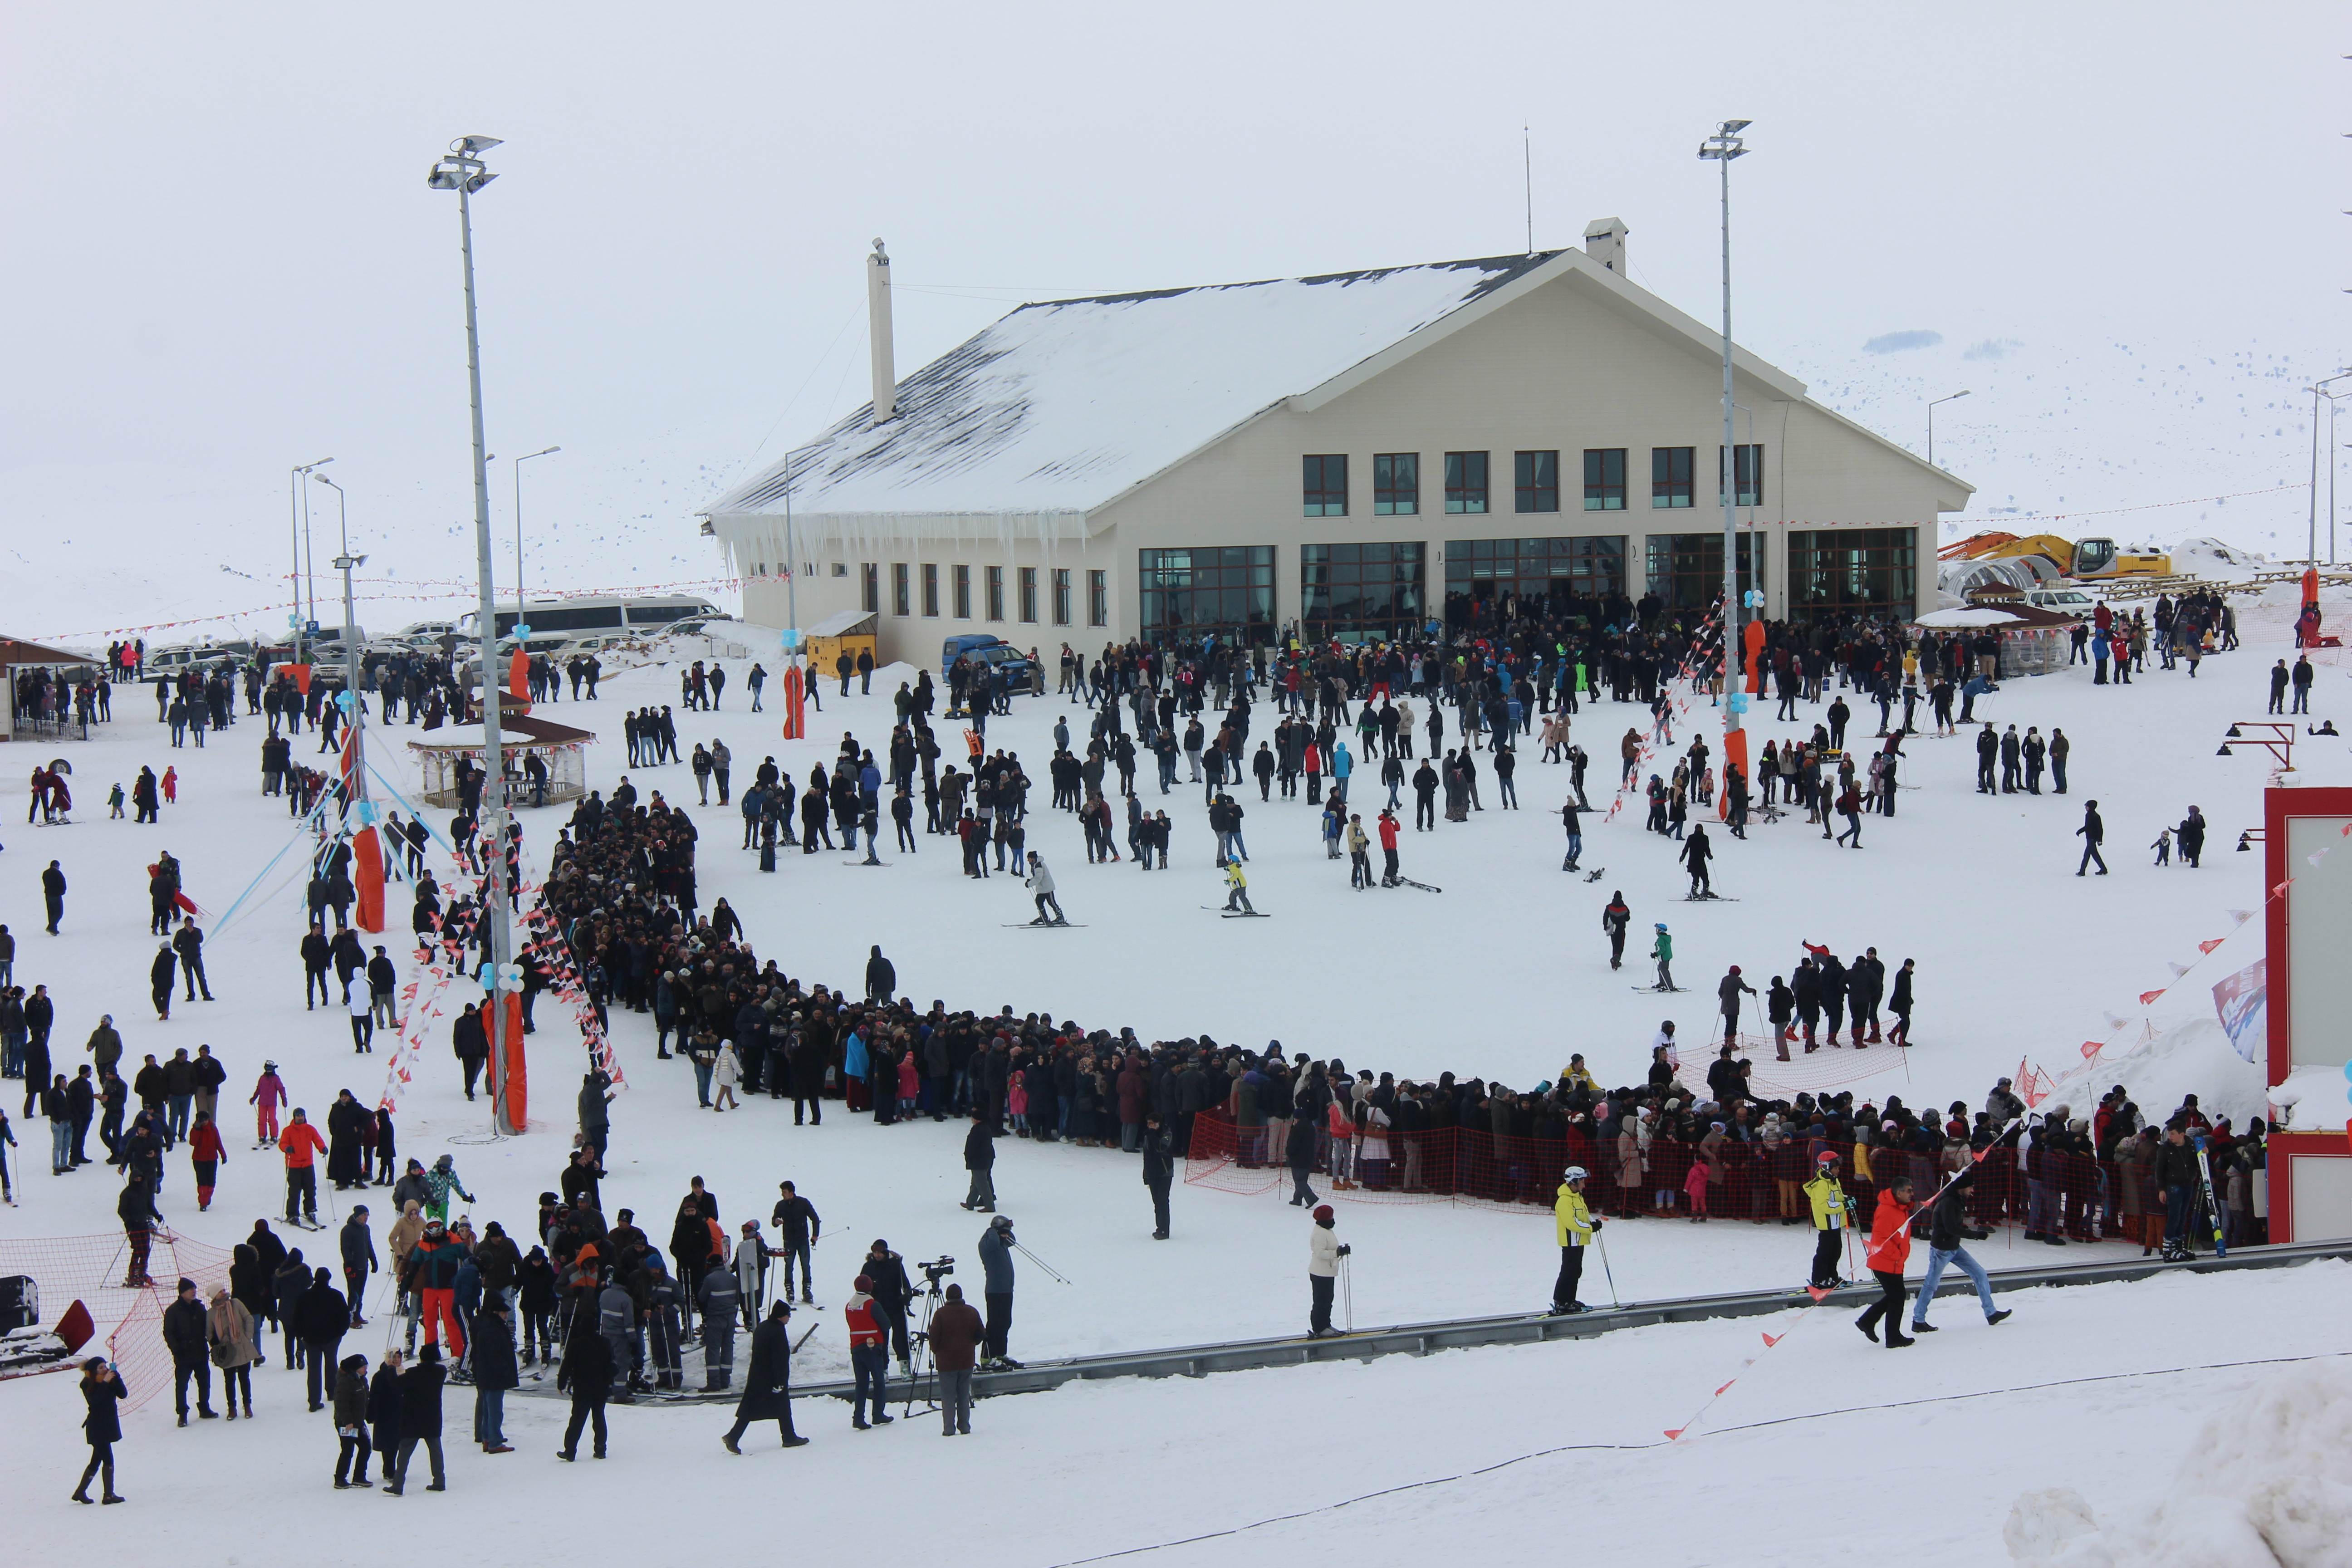 Yıldız Dağı Kış Sporları Turizm Merkezi, Yildiz Ski Resort